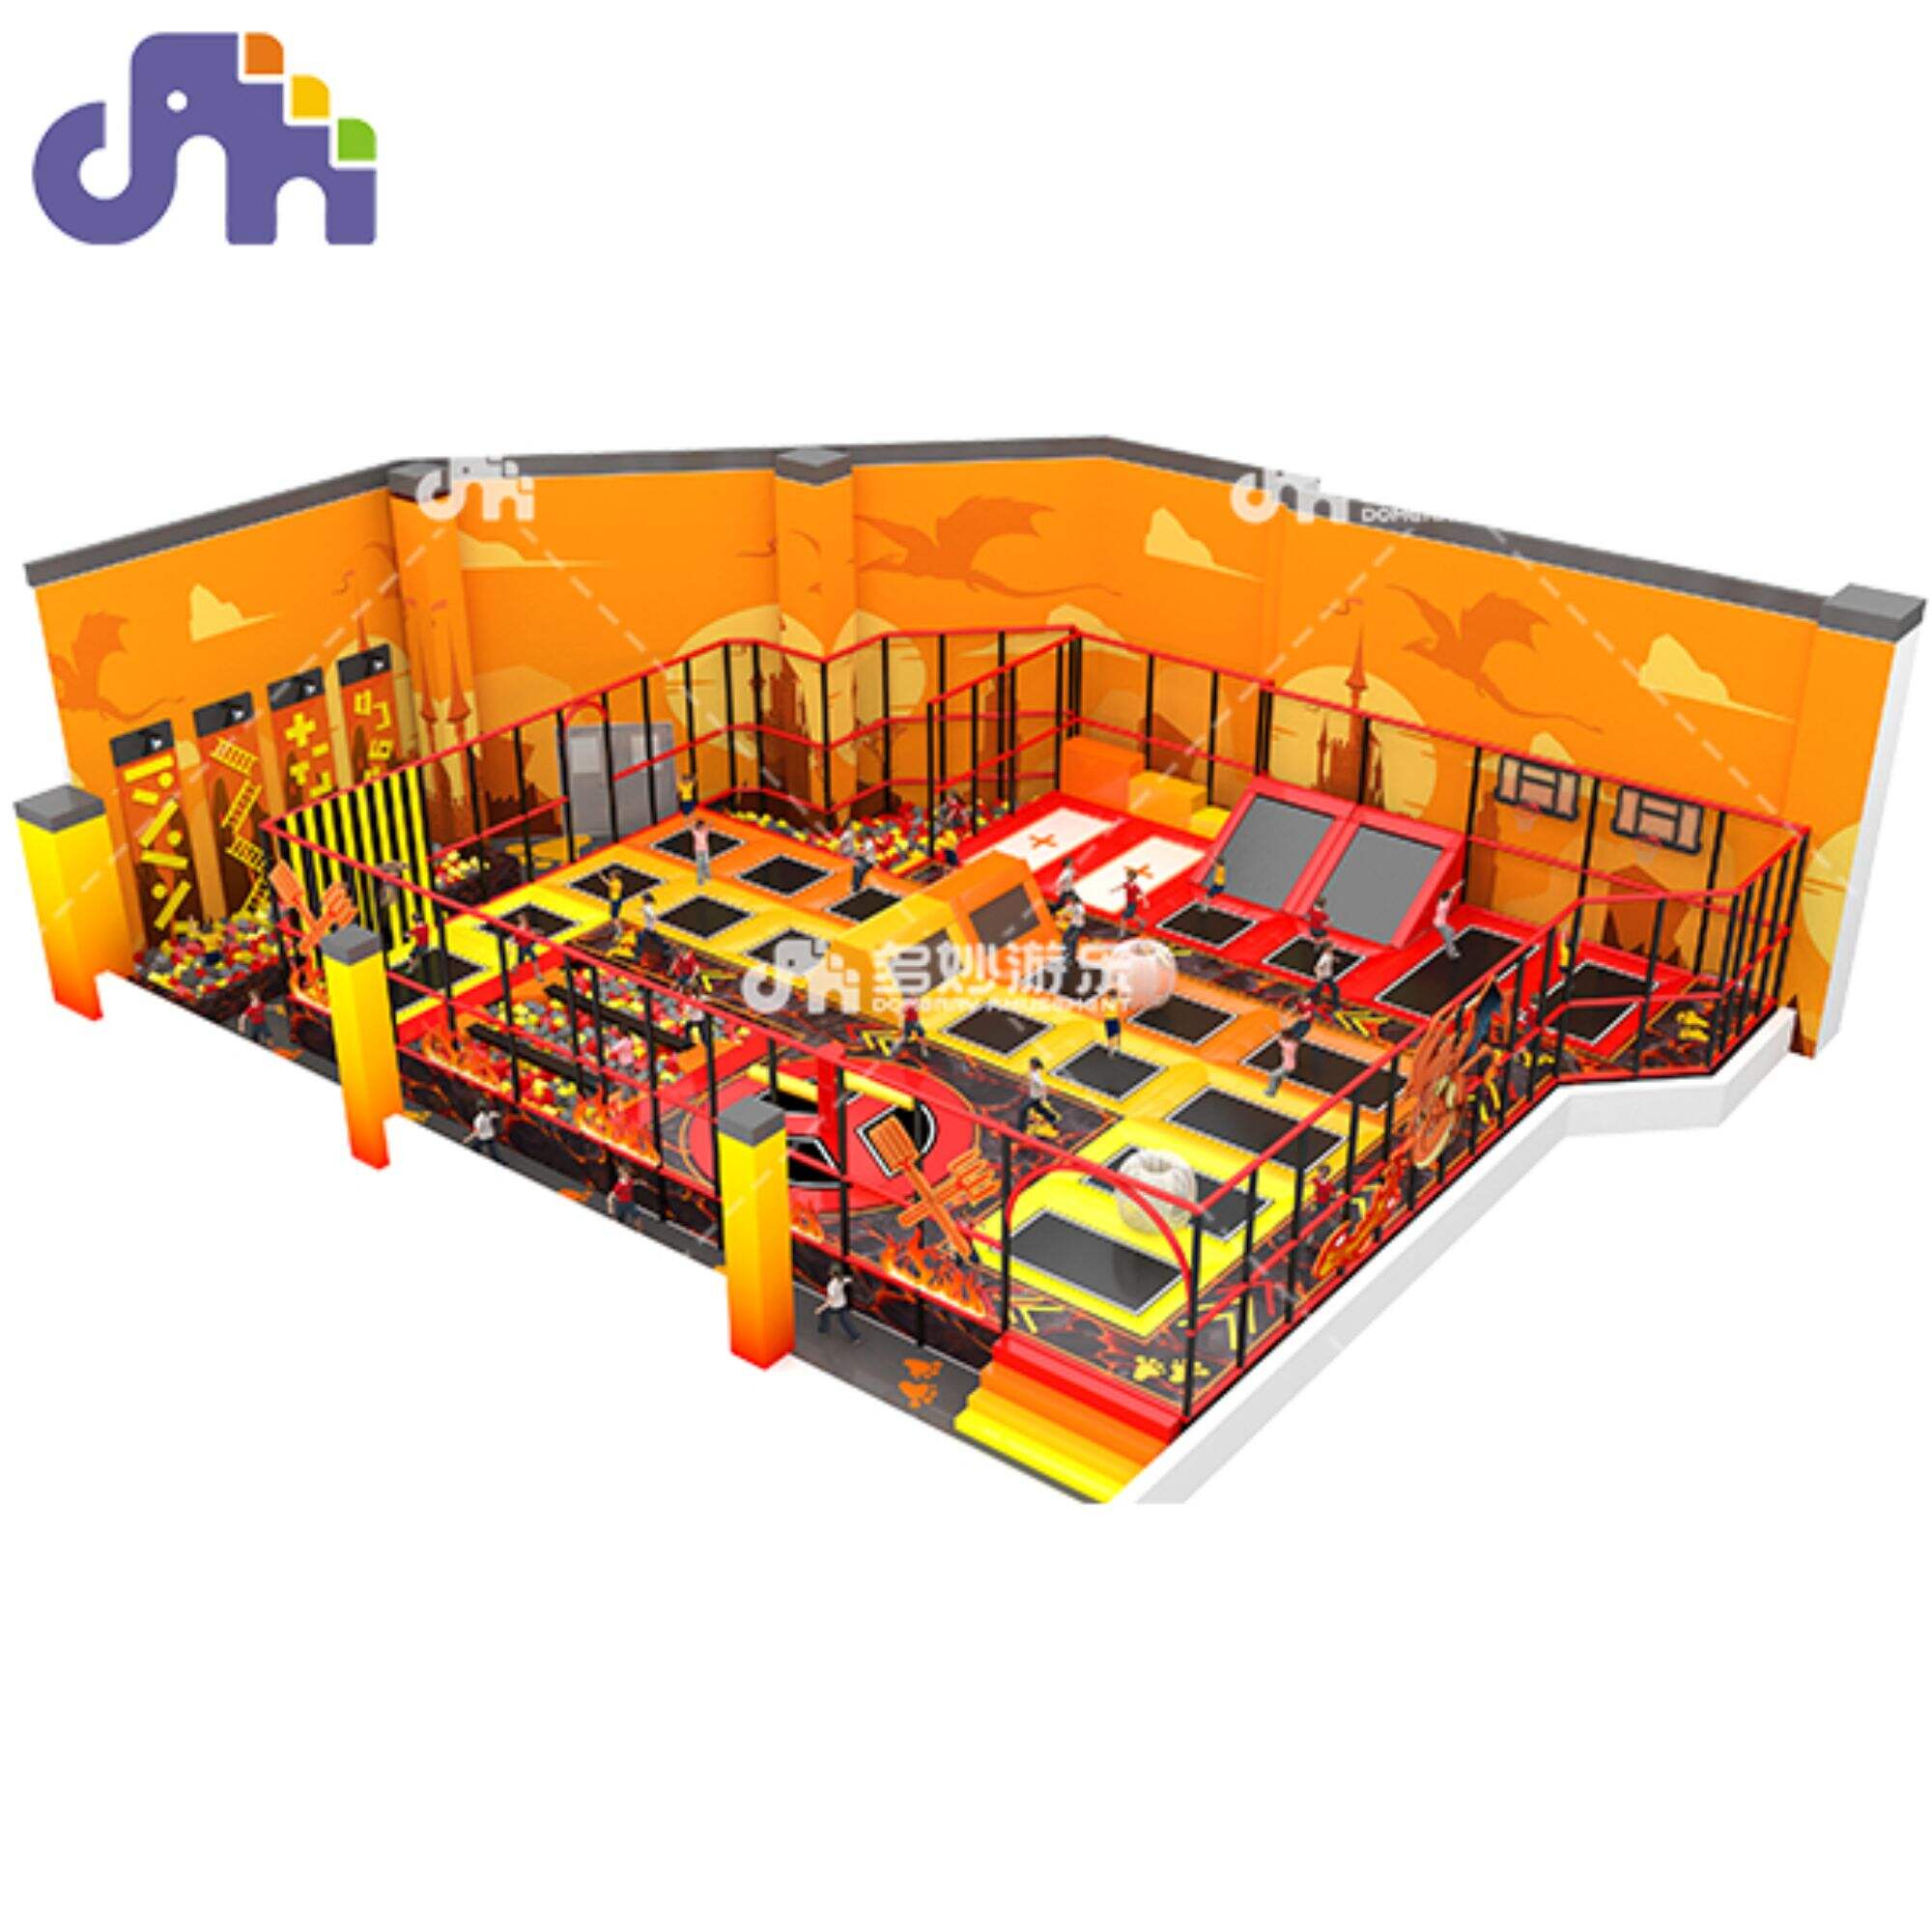 ကလေးများအတွက် အိမ်တွင်းကစားကွင်း Trampoline Jumping Bed for Fun and Active Play အတွက် မရှိမဖြစ်လိုအပ်သော ပစ္စည်းကိရိယာ